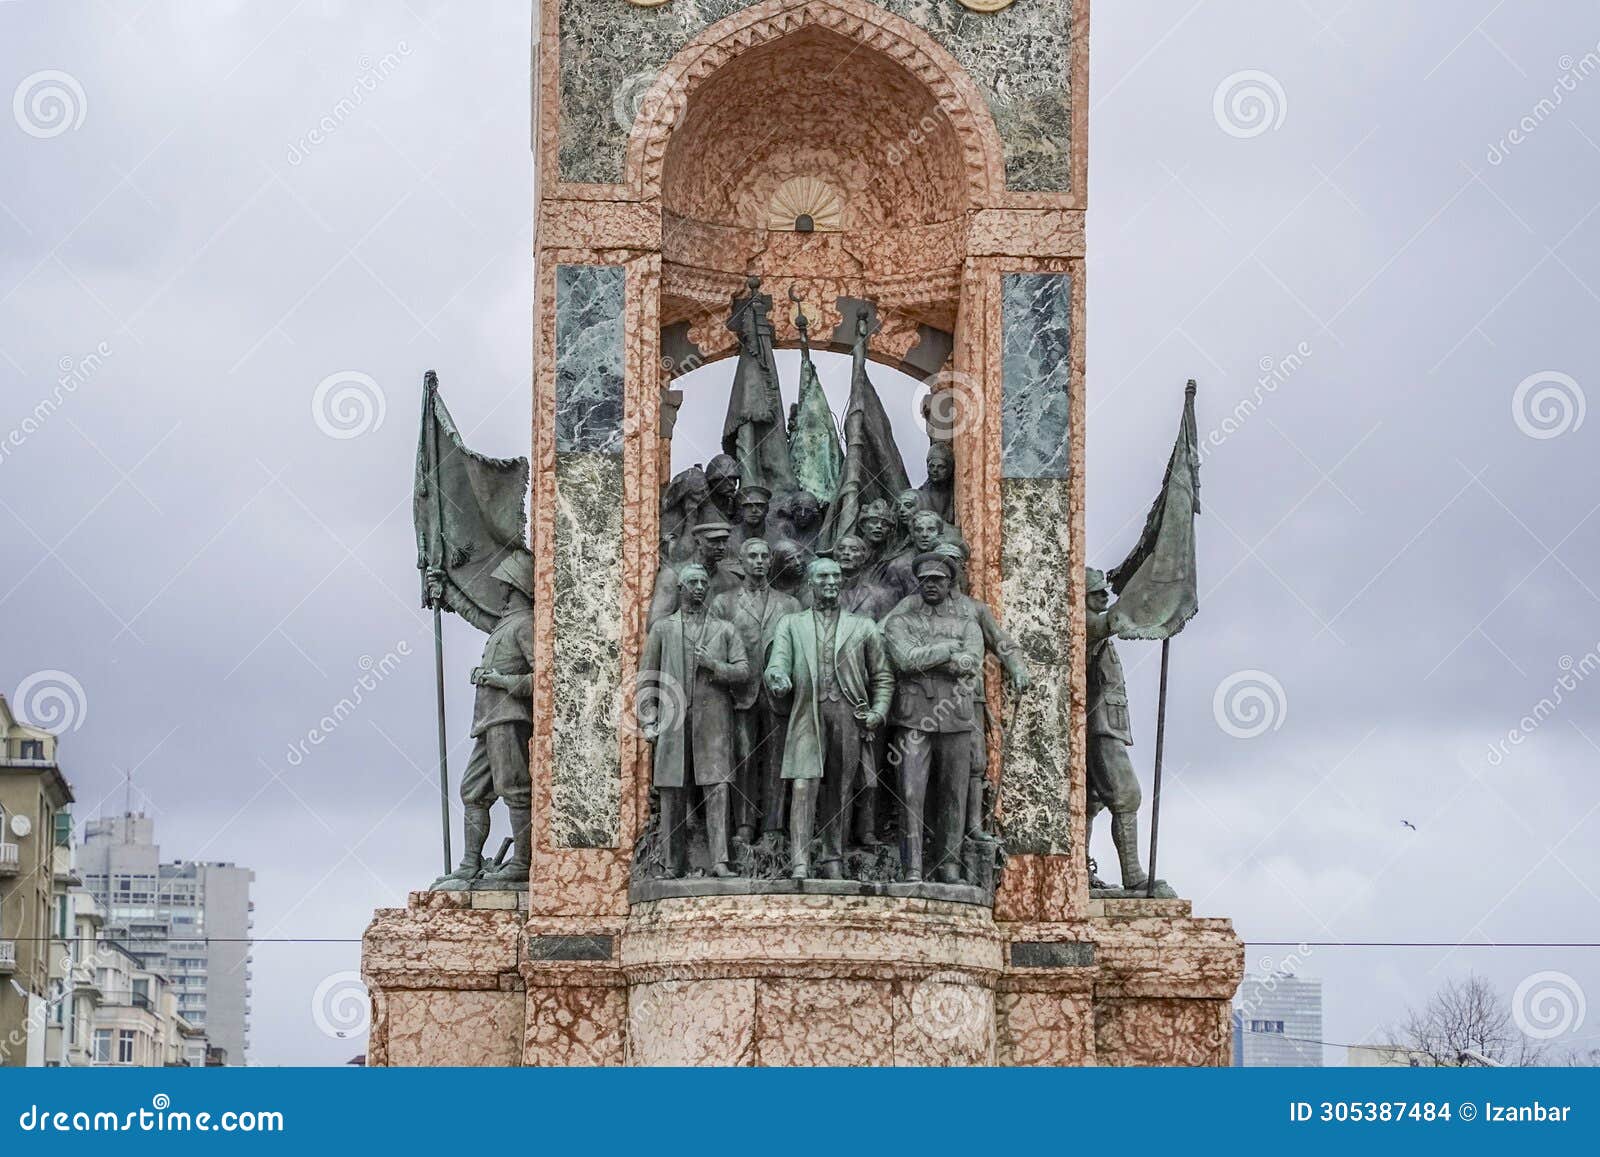 taksim square republic monument istanbul turkey